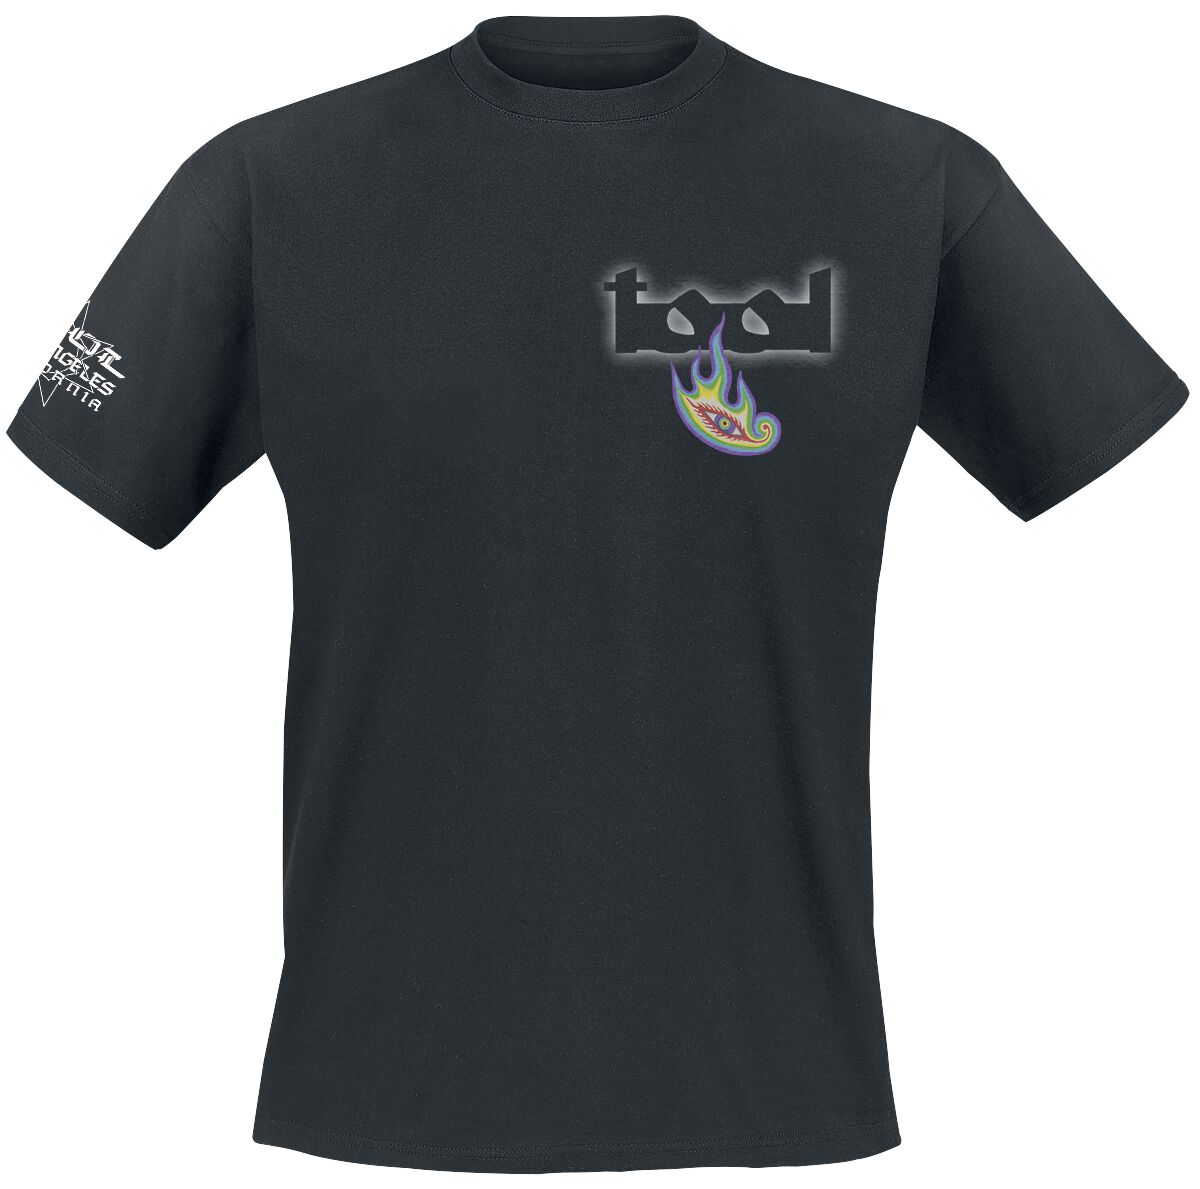 Tool T-Shirt - Lateralus - S bis XXL - für Männer - Größe XXL - schwarz  - Lizenziertes Merchandise!